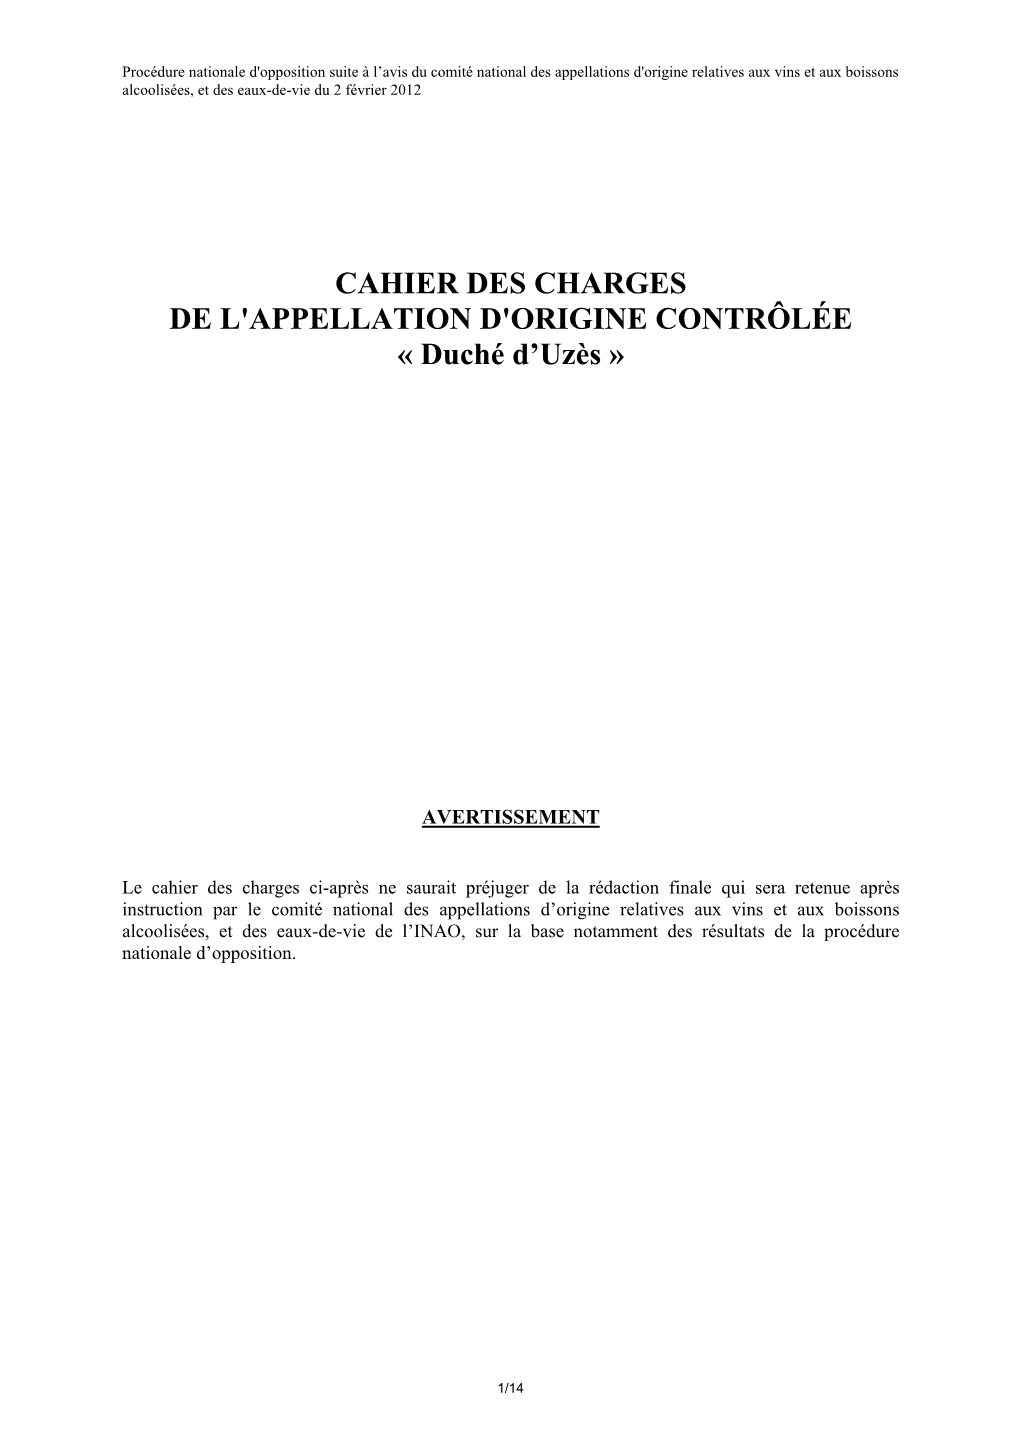 CAHIER DES CHARGES DE L'appellation D'origine CONTRÔLÉE « Duché D'uzès »